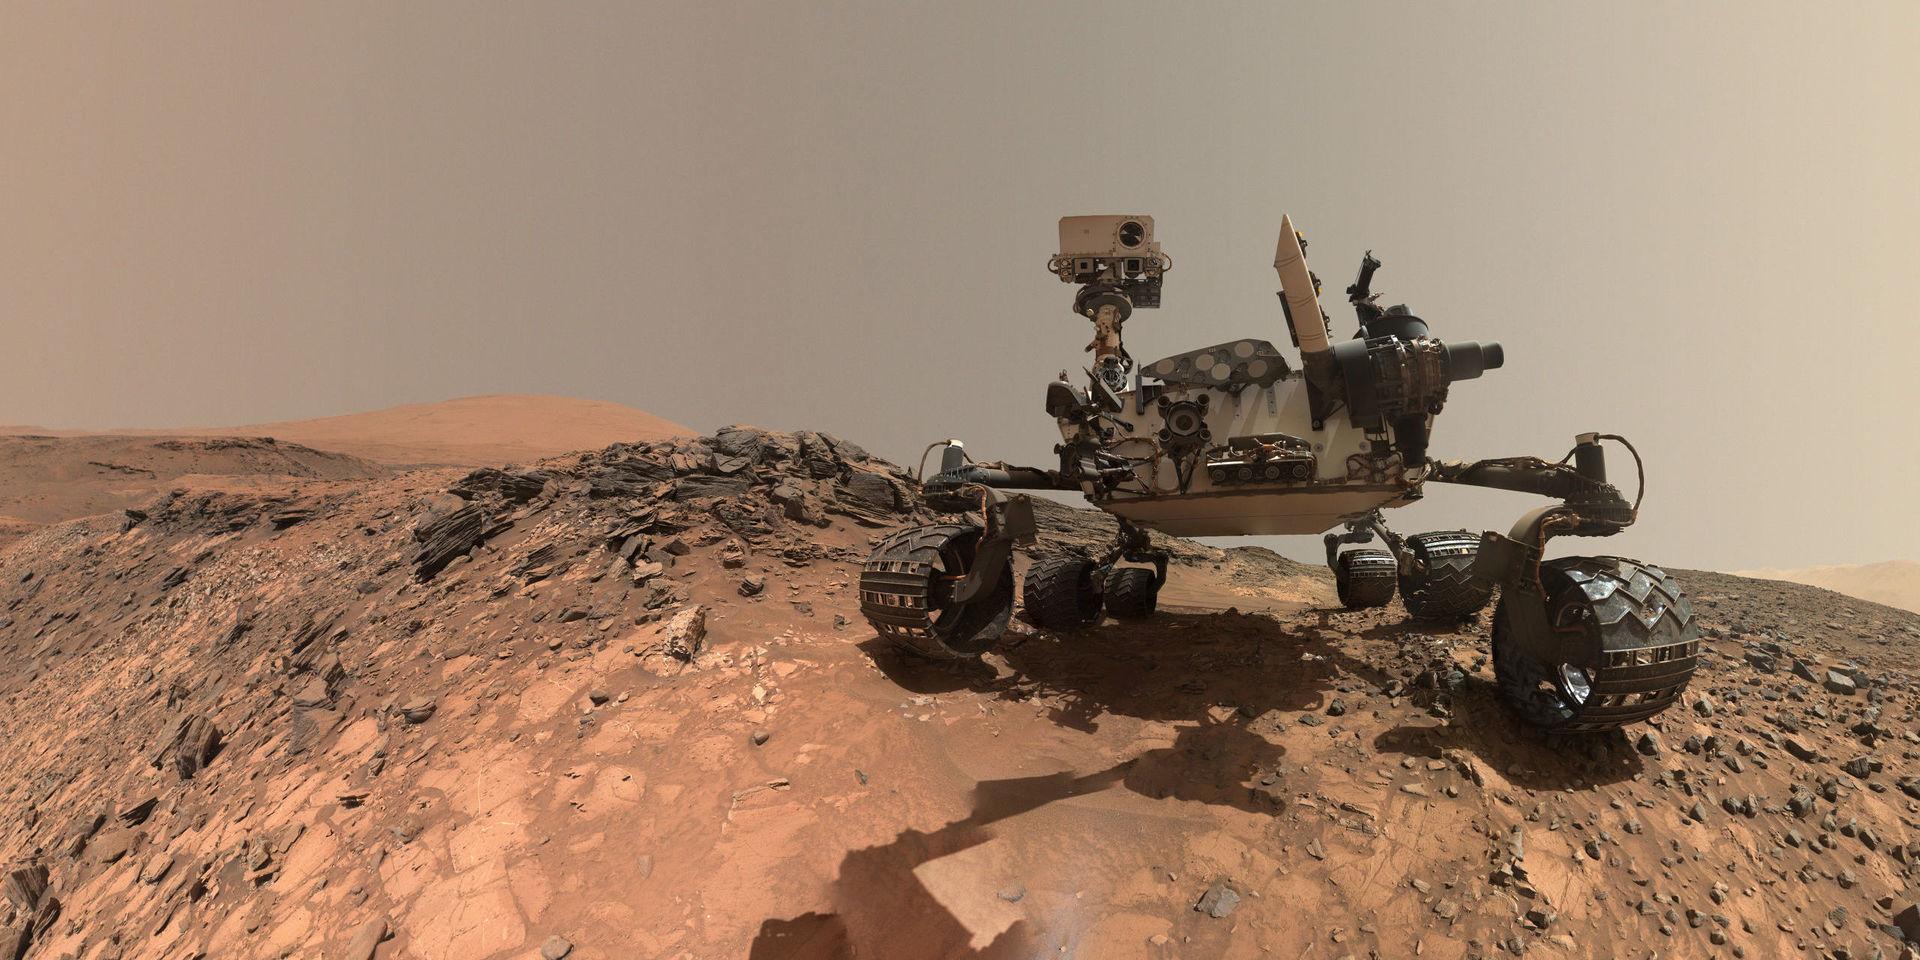 Sedan augusti 2012 undersöker rymdfarkosten Curiosity Mars yta, som kan liknas vid en kall stenöken. På denna bild syns Curiosity på en 'selfie' tagen fem veckor efter att den hade landat i en krater på Mars. Arkivbild.